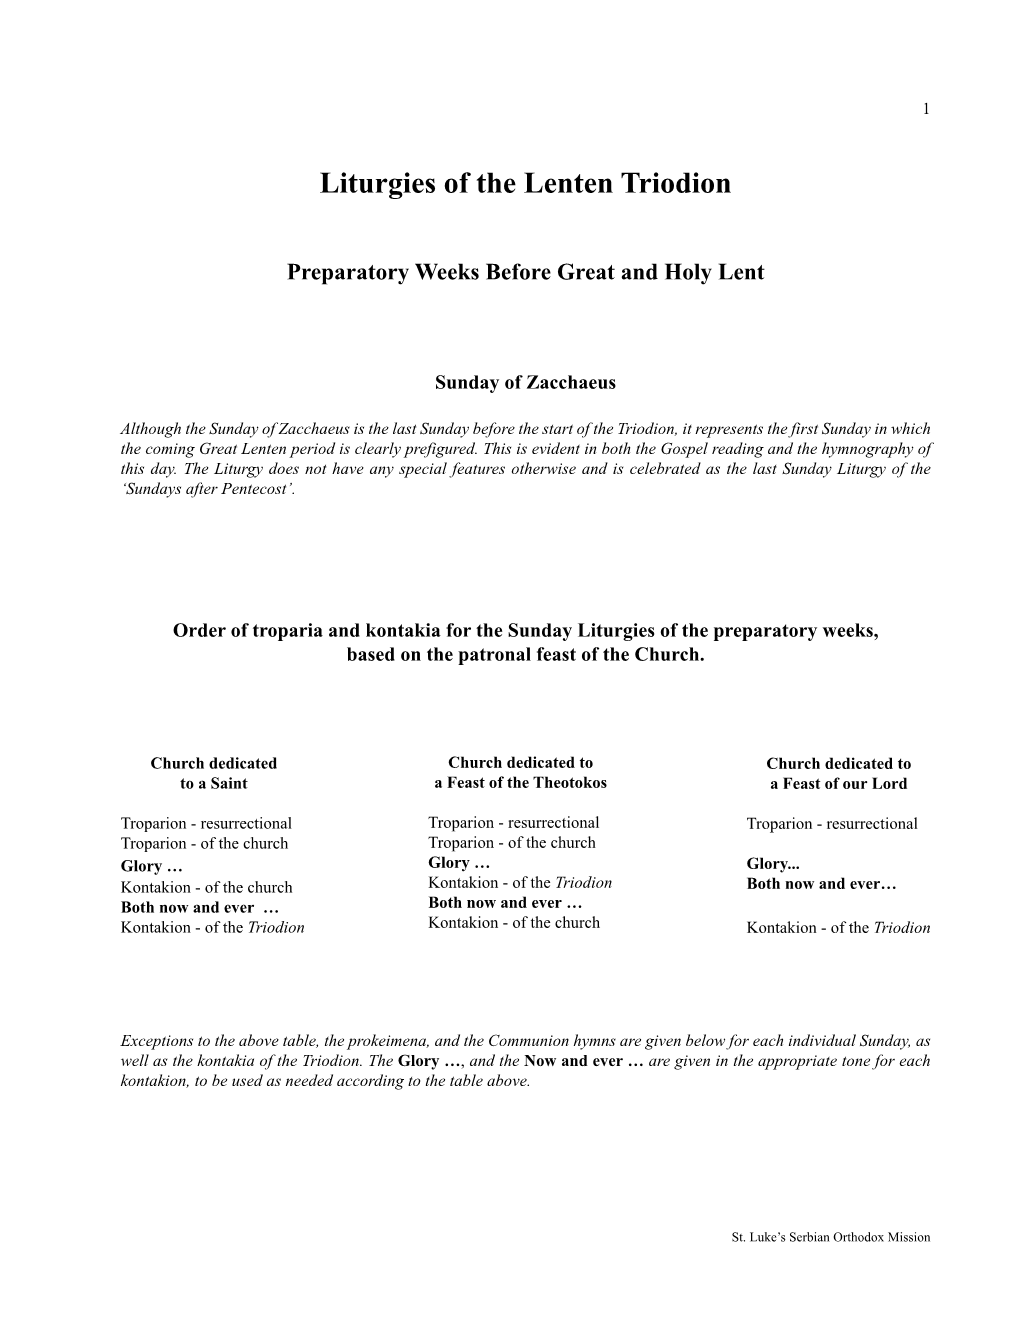 Liturgies of the Lenten Triodion